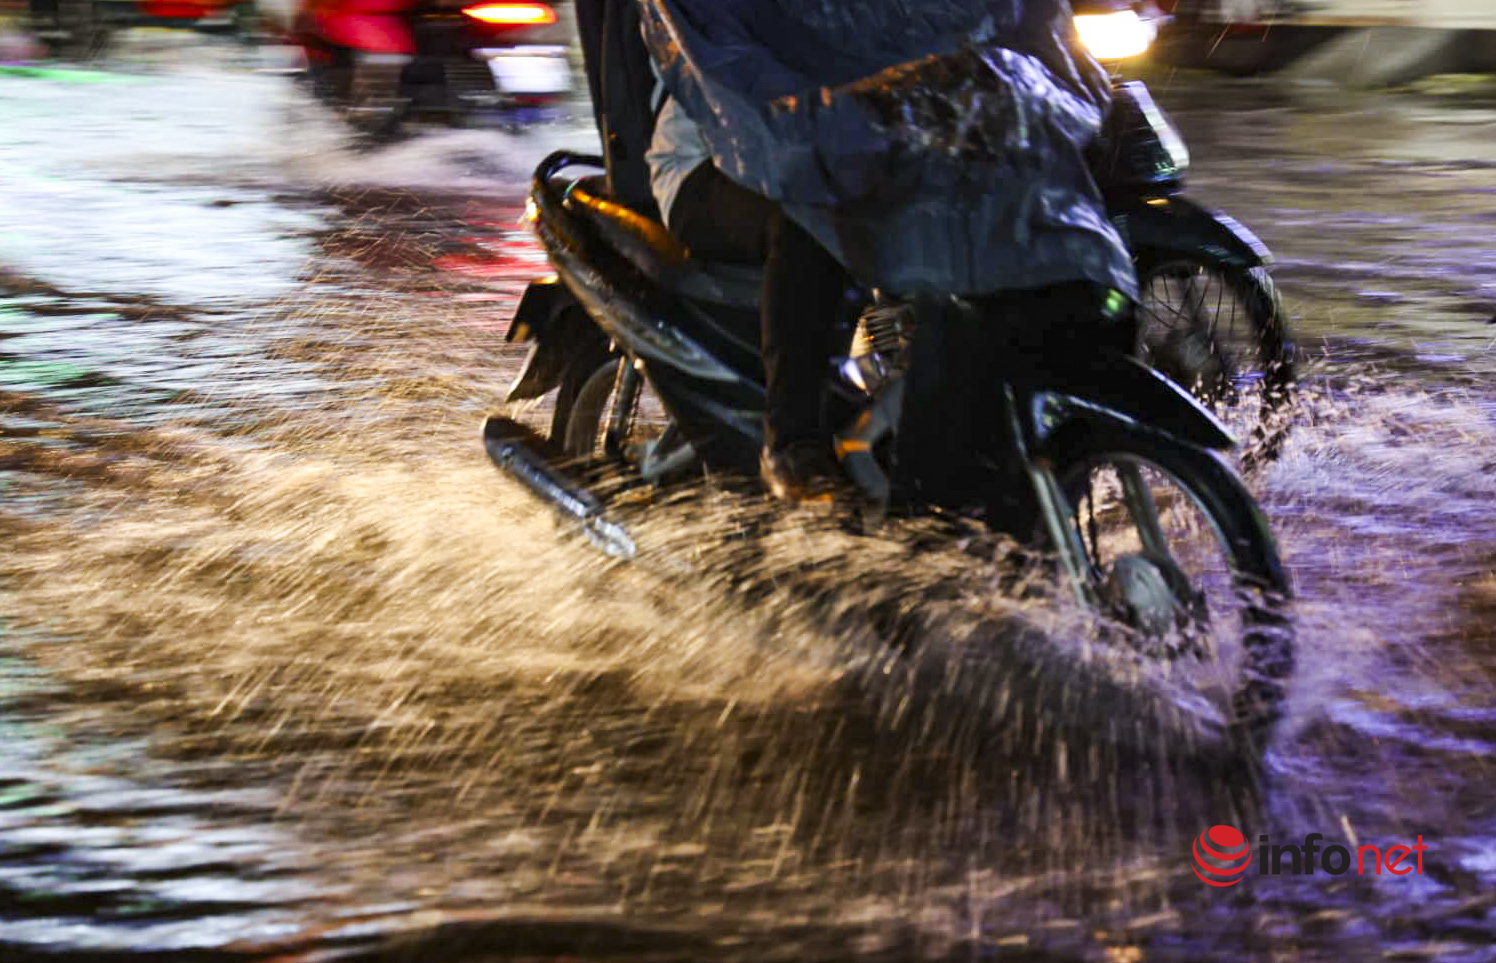 Hà Nội: Cơn mưa lớn kéo dài, nhiều tuyến phố ngập úng, người dân phải dùng xô tát nước ra khỏi nhà